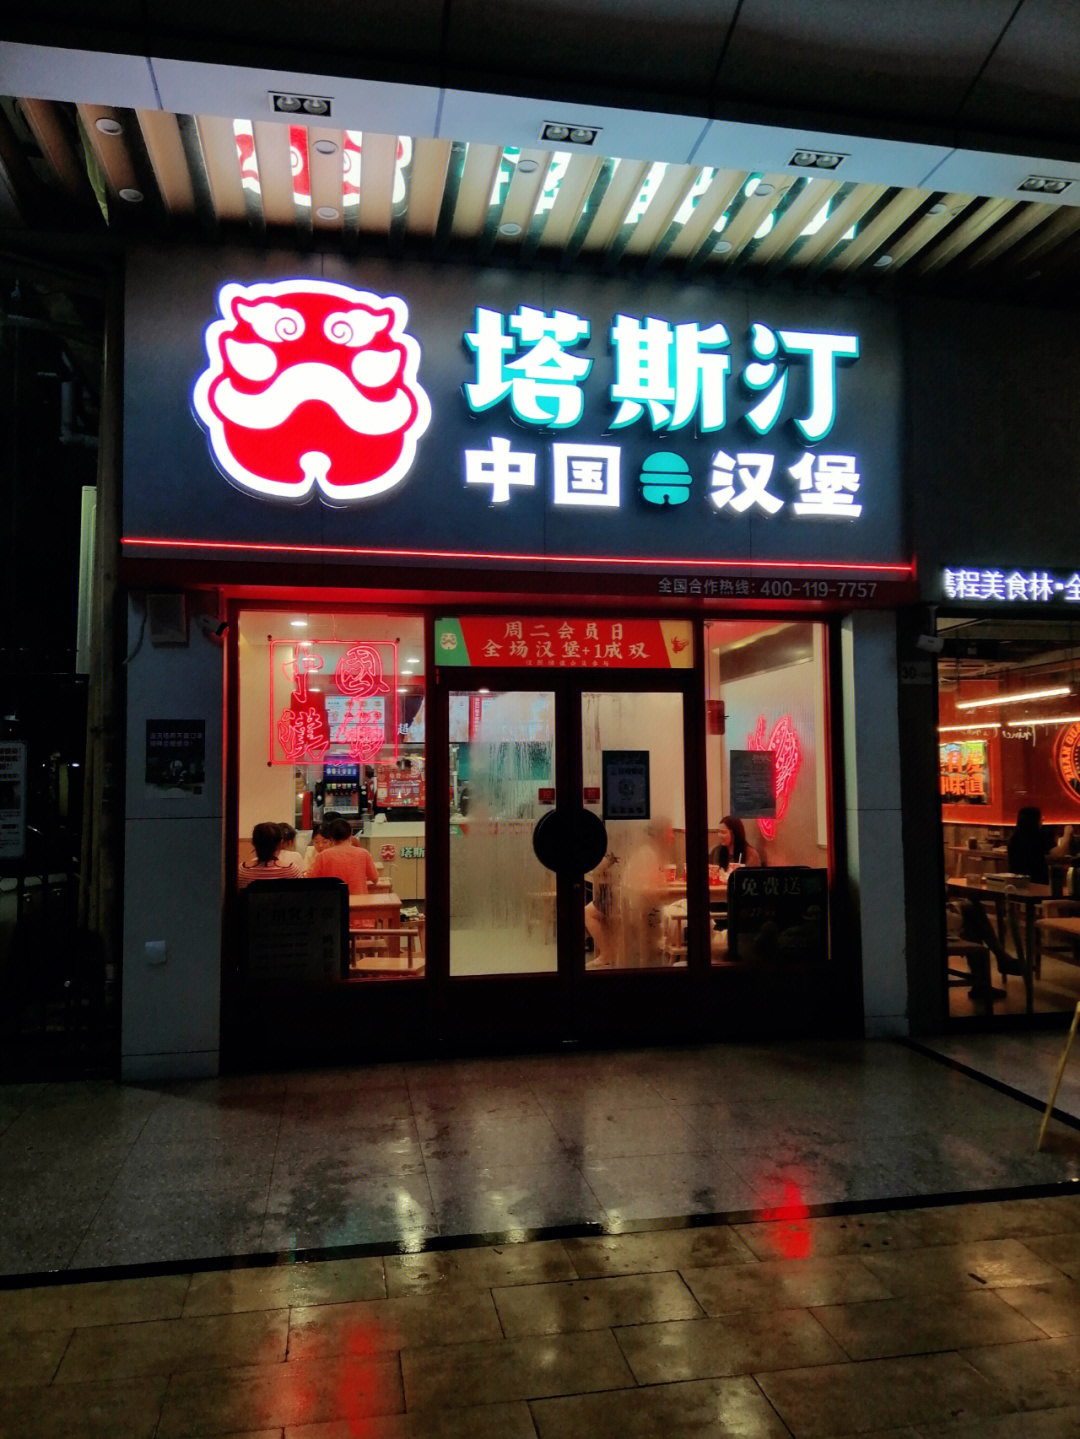 塔斯汀中国汉堡分店图片